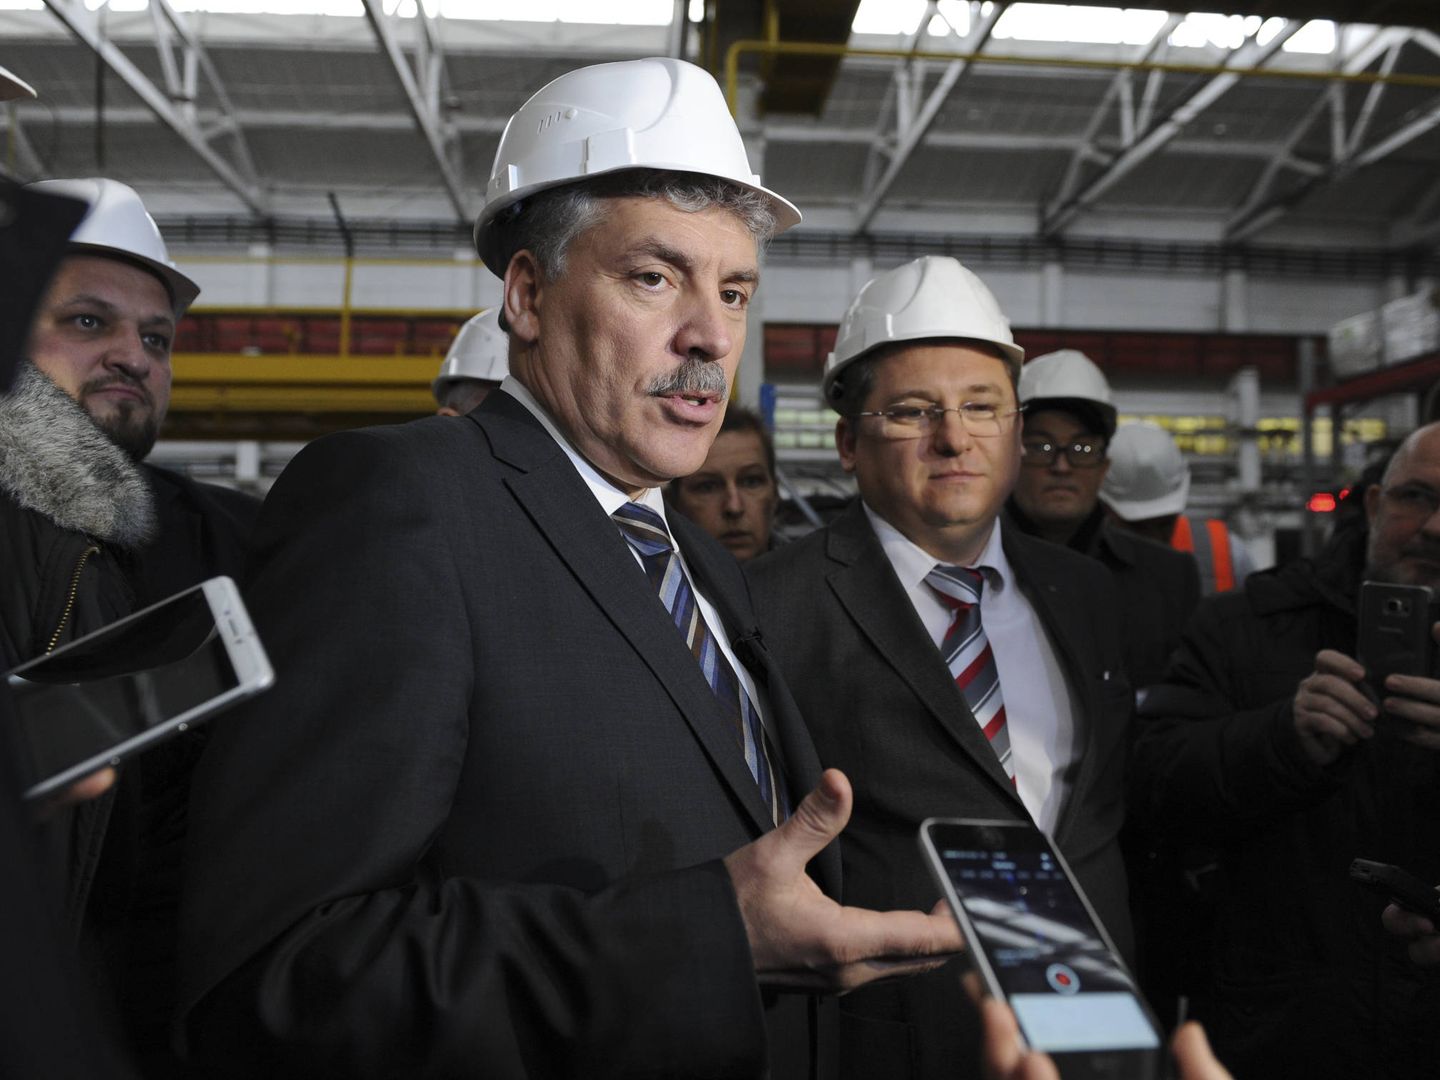 El candidato comunista Pavel Grudinin durante una visita a una planta de Klever en Rostov-on-Don. (Reuters)